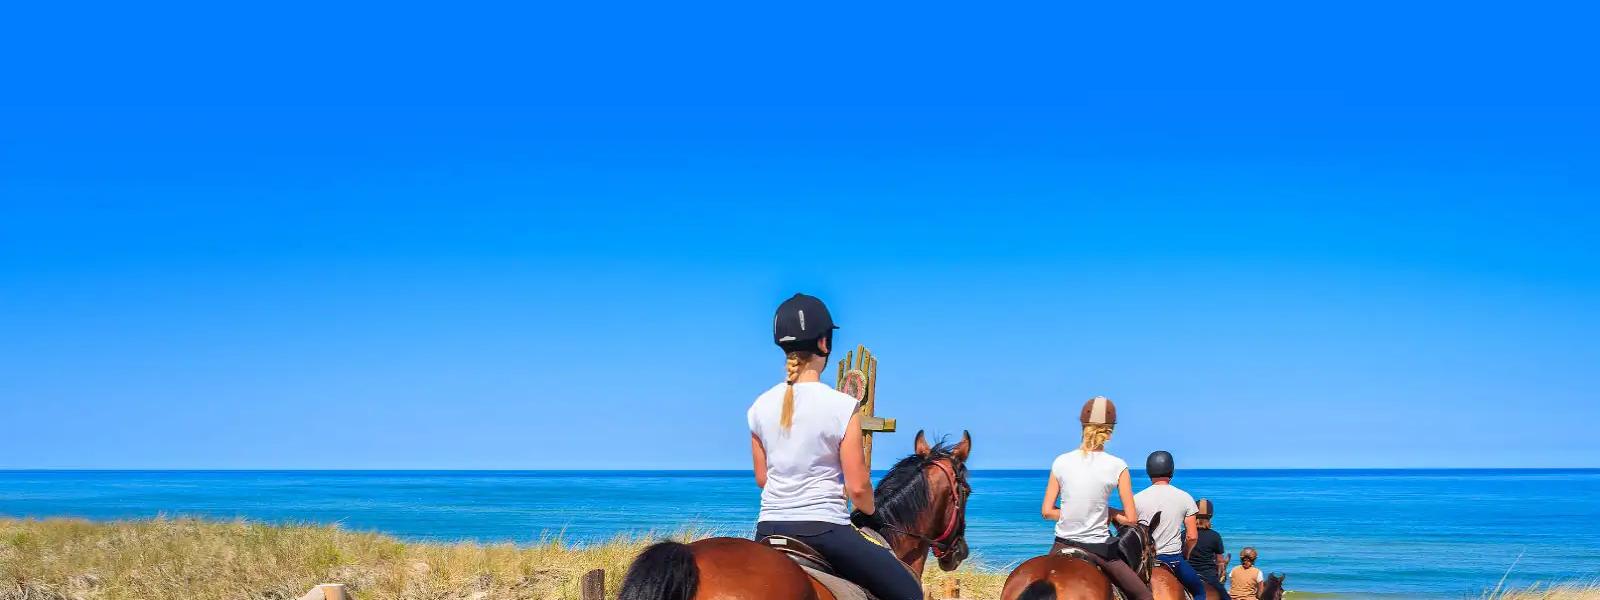 Reiterferien – Urlaub auf dem Reiterhof in einer Ferienwohnung - e-domizil